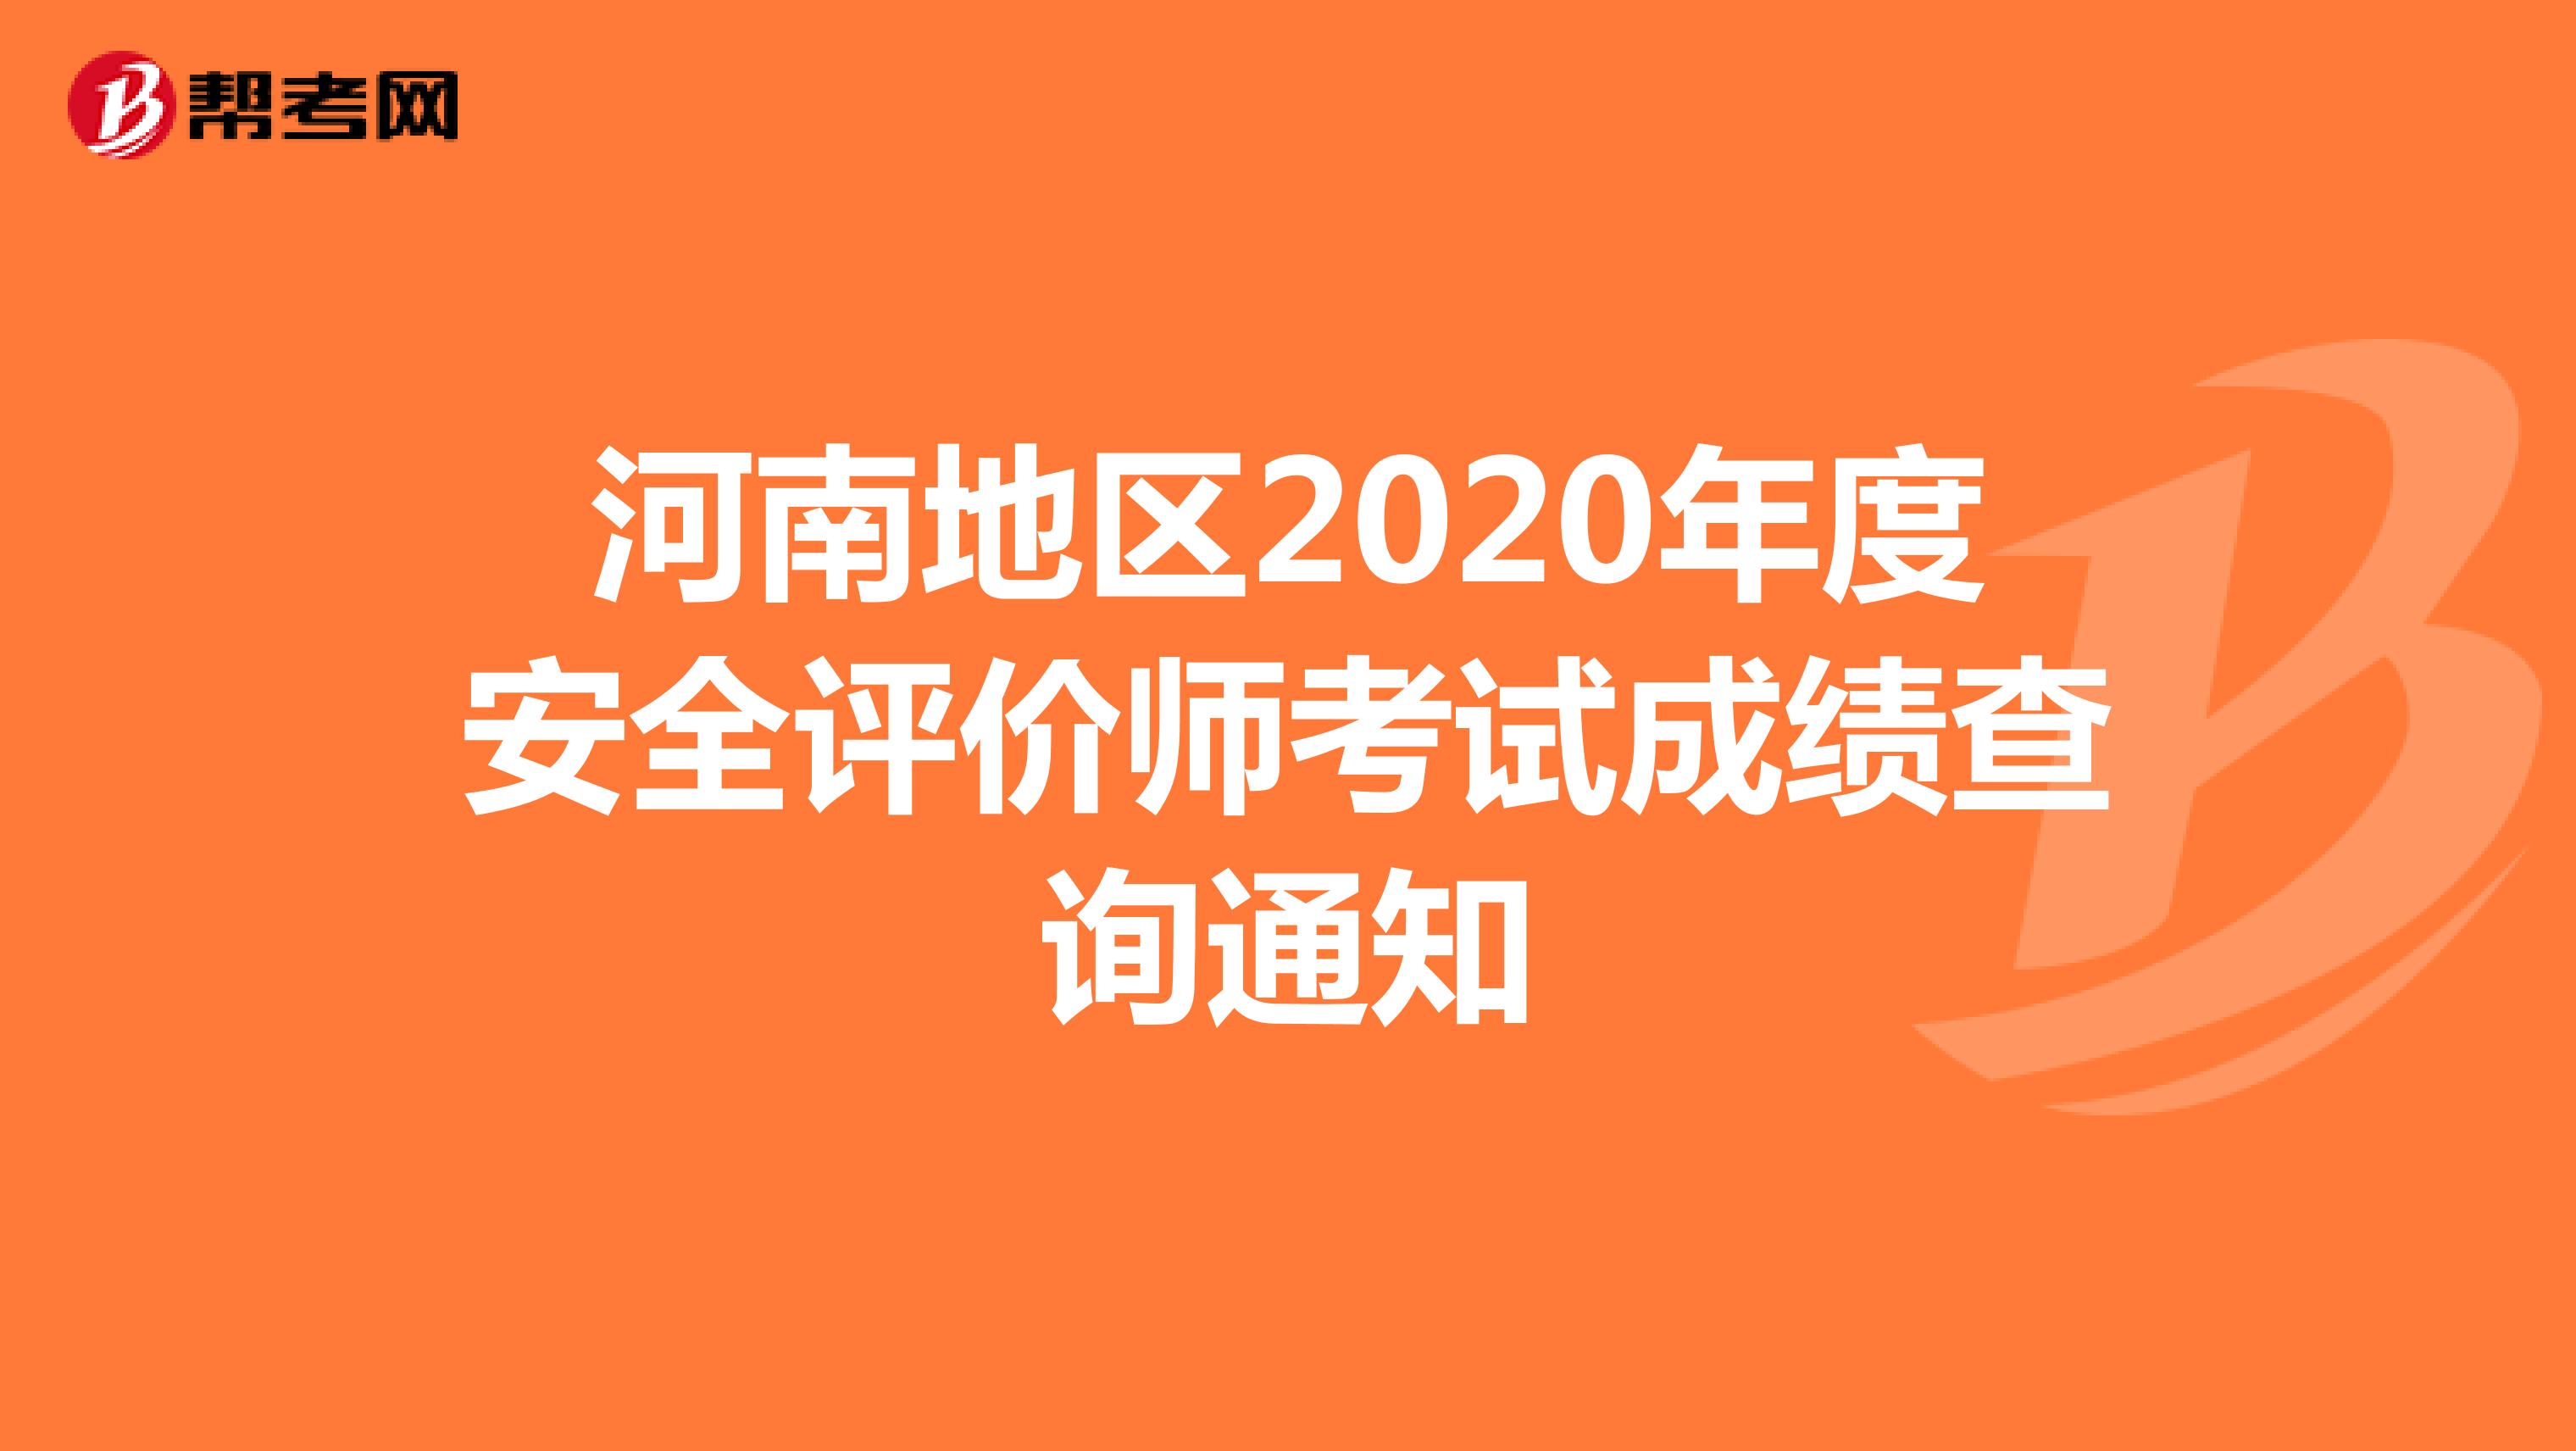 河南地区2020年度安全评价师考试成绩查询通知